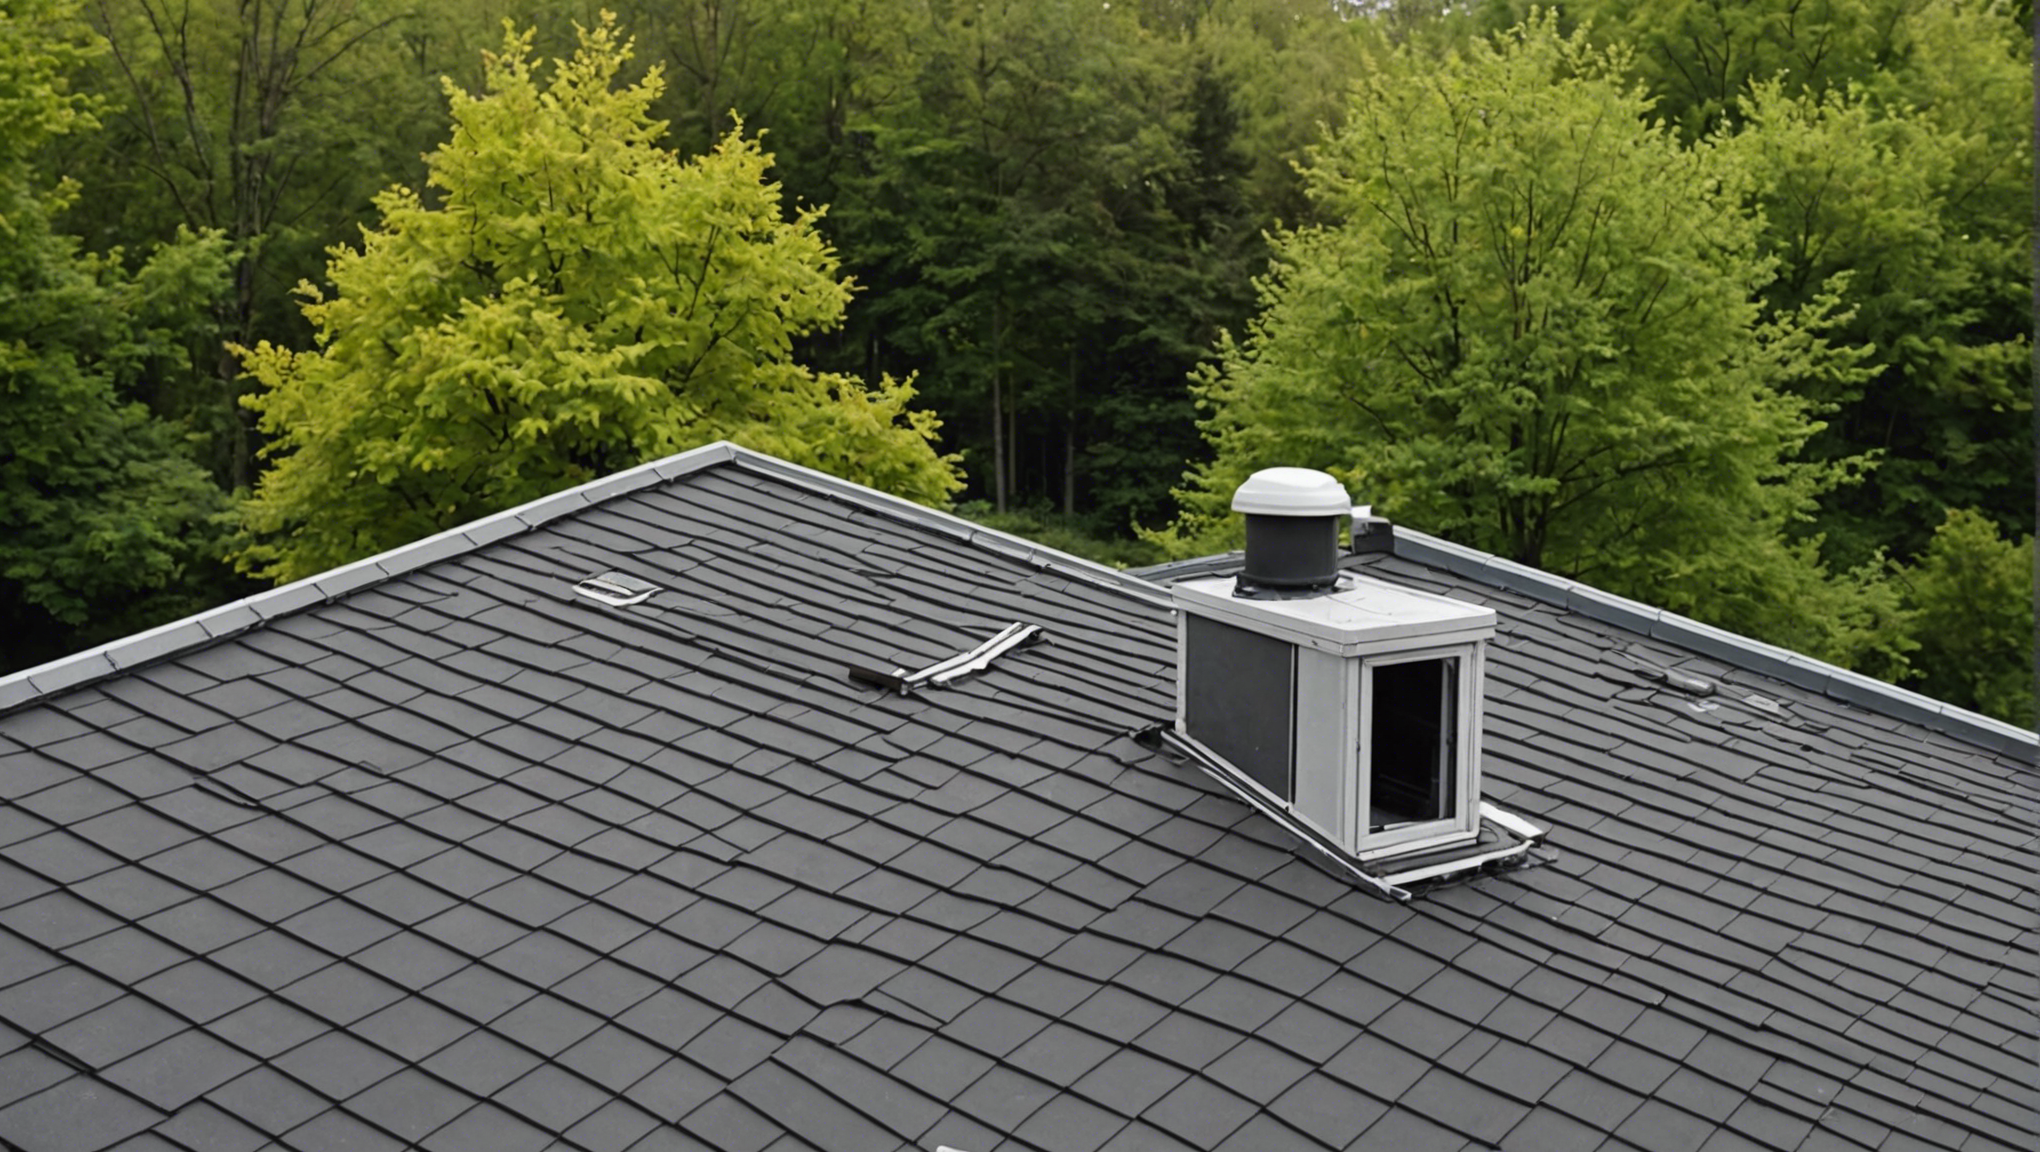 découvrez l'importance de l'évaluation et du diagnostic de l'isolation de votre toiture pour améliorer le confort thermique de votre maison.